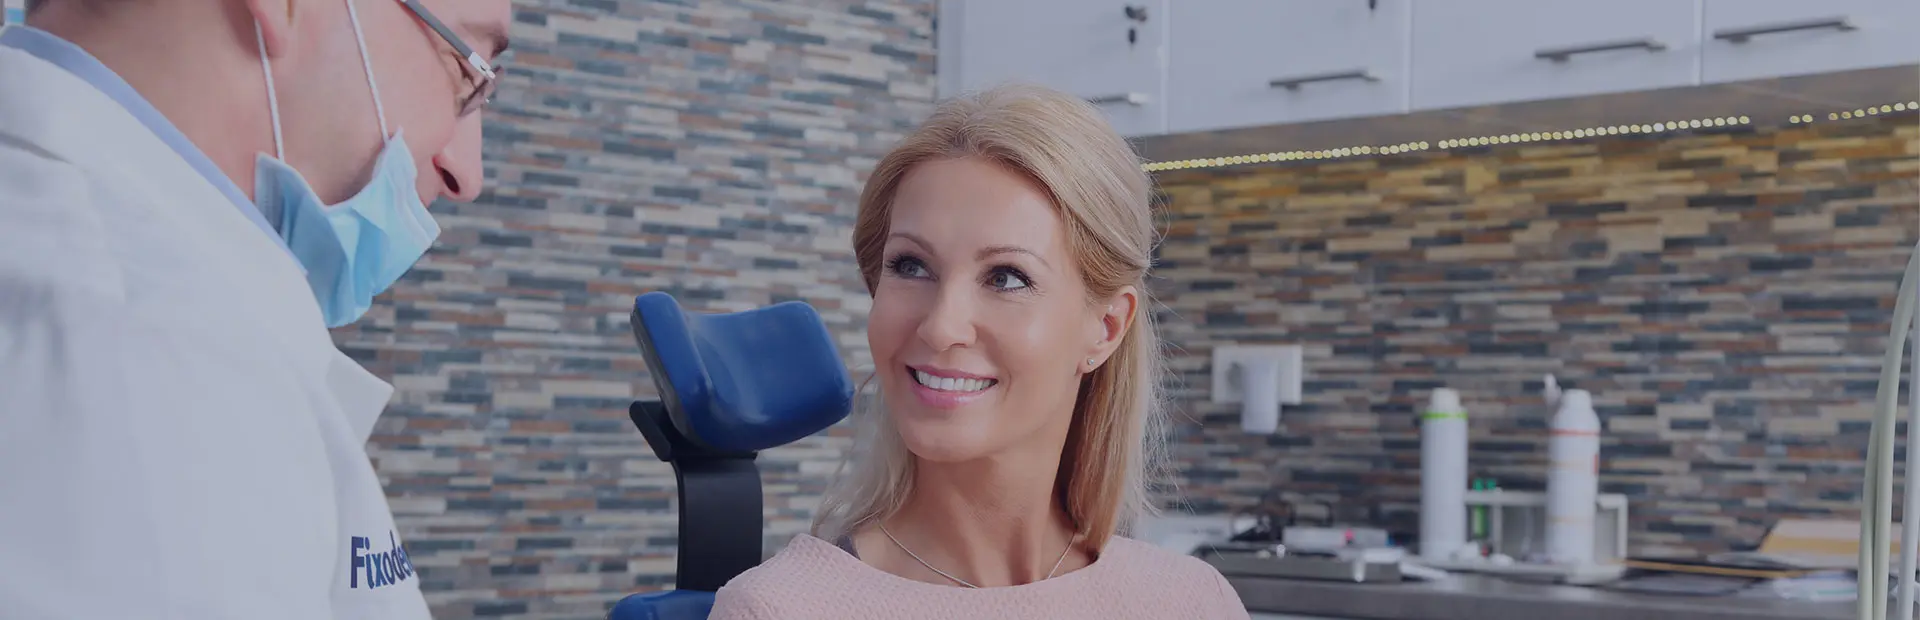 Une femme est assise dans le fauteuil du dentiste et celui-ci lui explique ce que sont les prothèses stellites.